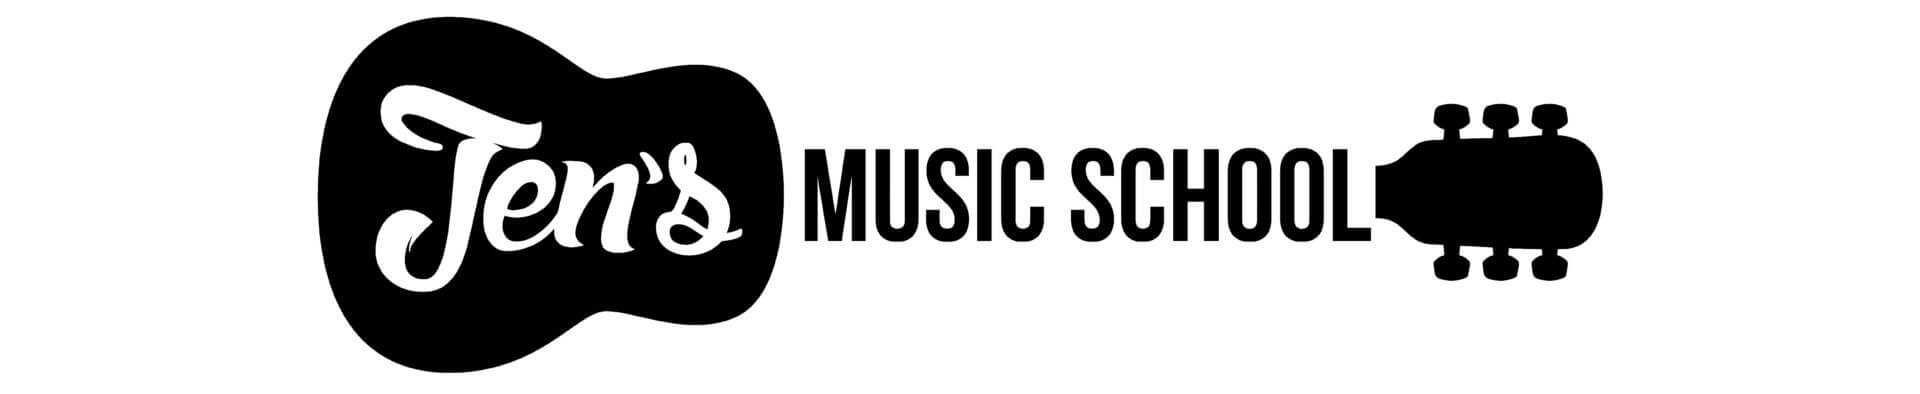 jen's music school